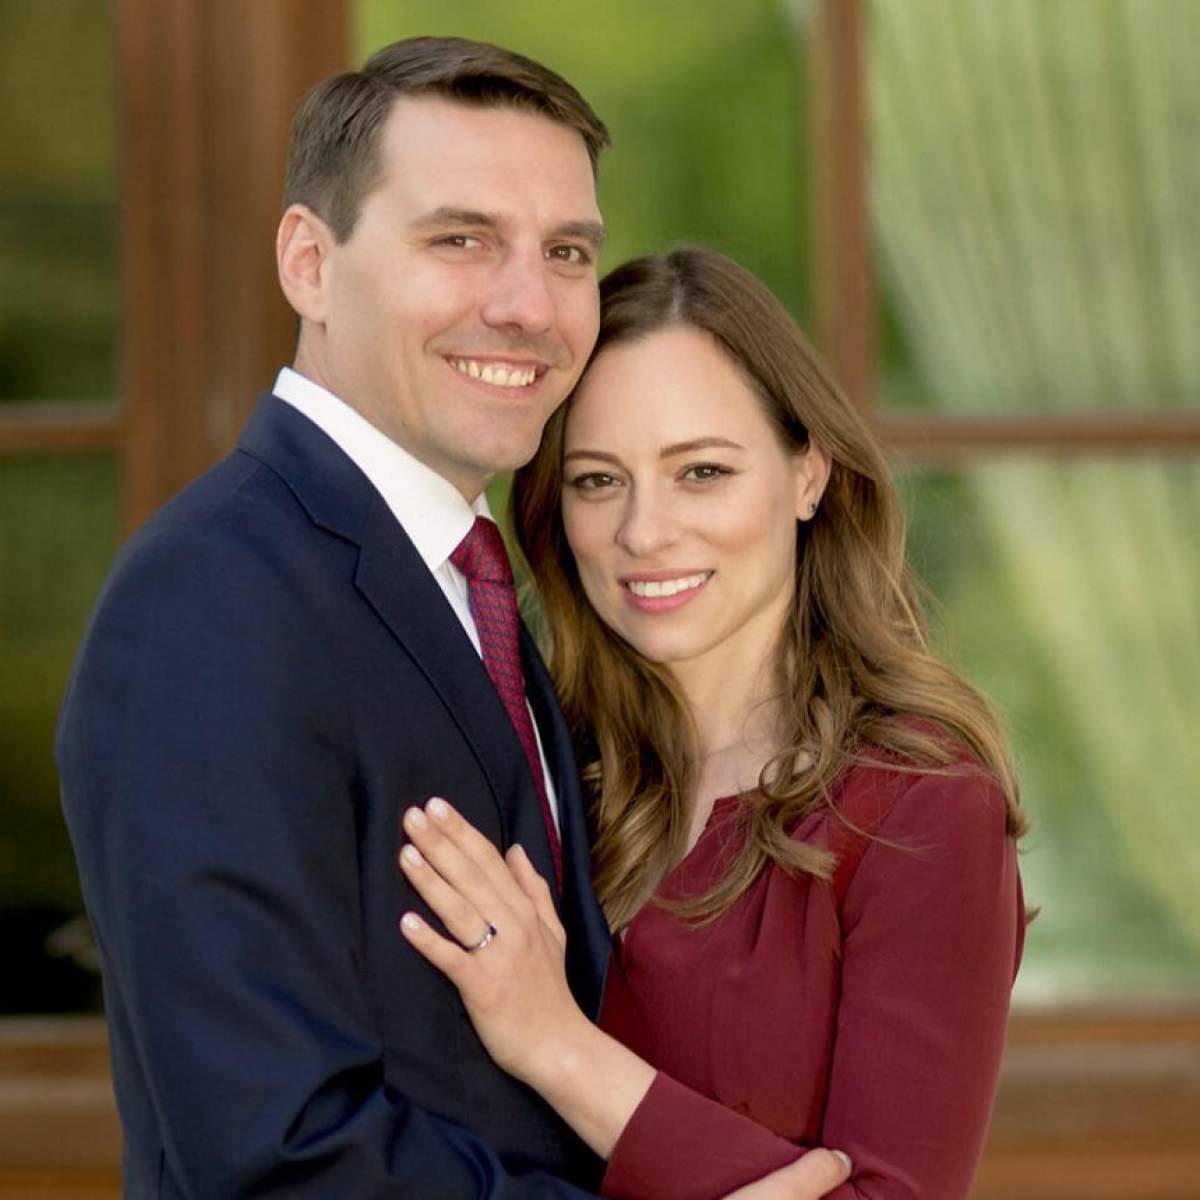 Nuntă regală în România! Fostul Principe Nicolae și Alina Binder au stabilit data marelui eveniment